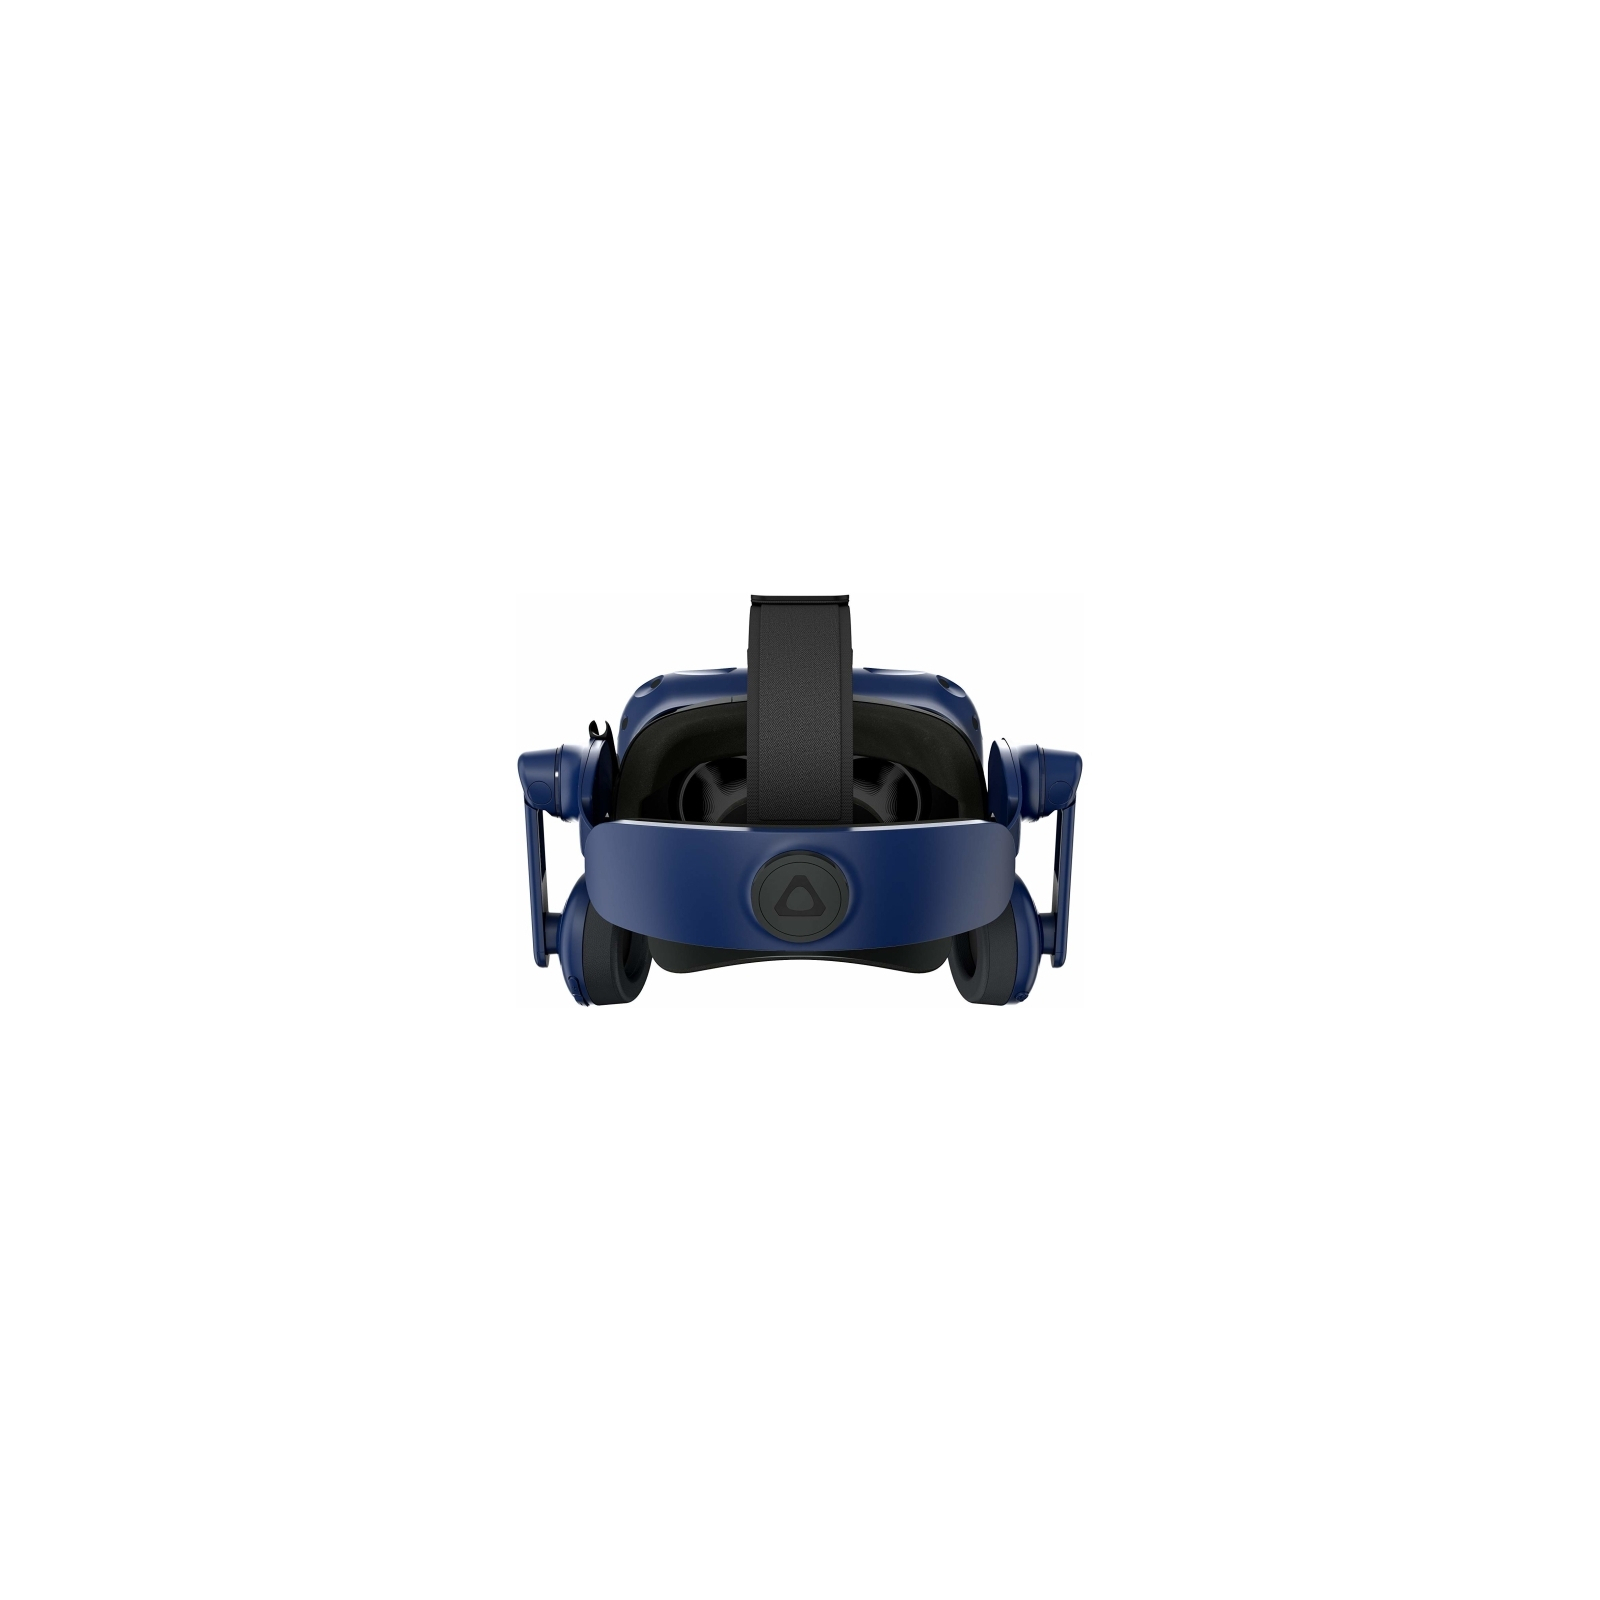 Окуляри віртуальної реальності HTC VIVE PRO HMD (2.0) Blue-Black (99HANW020-00) зображення 4